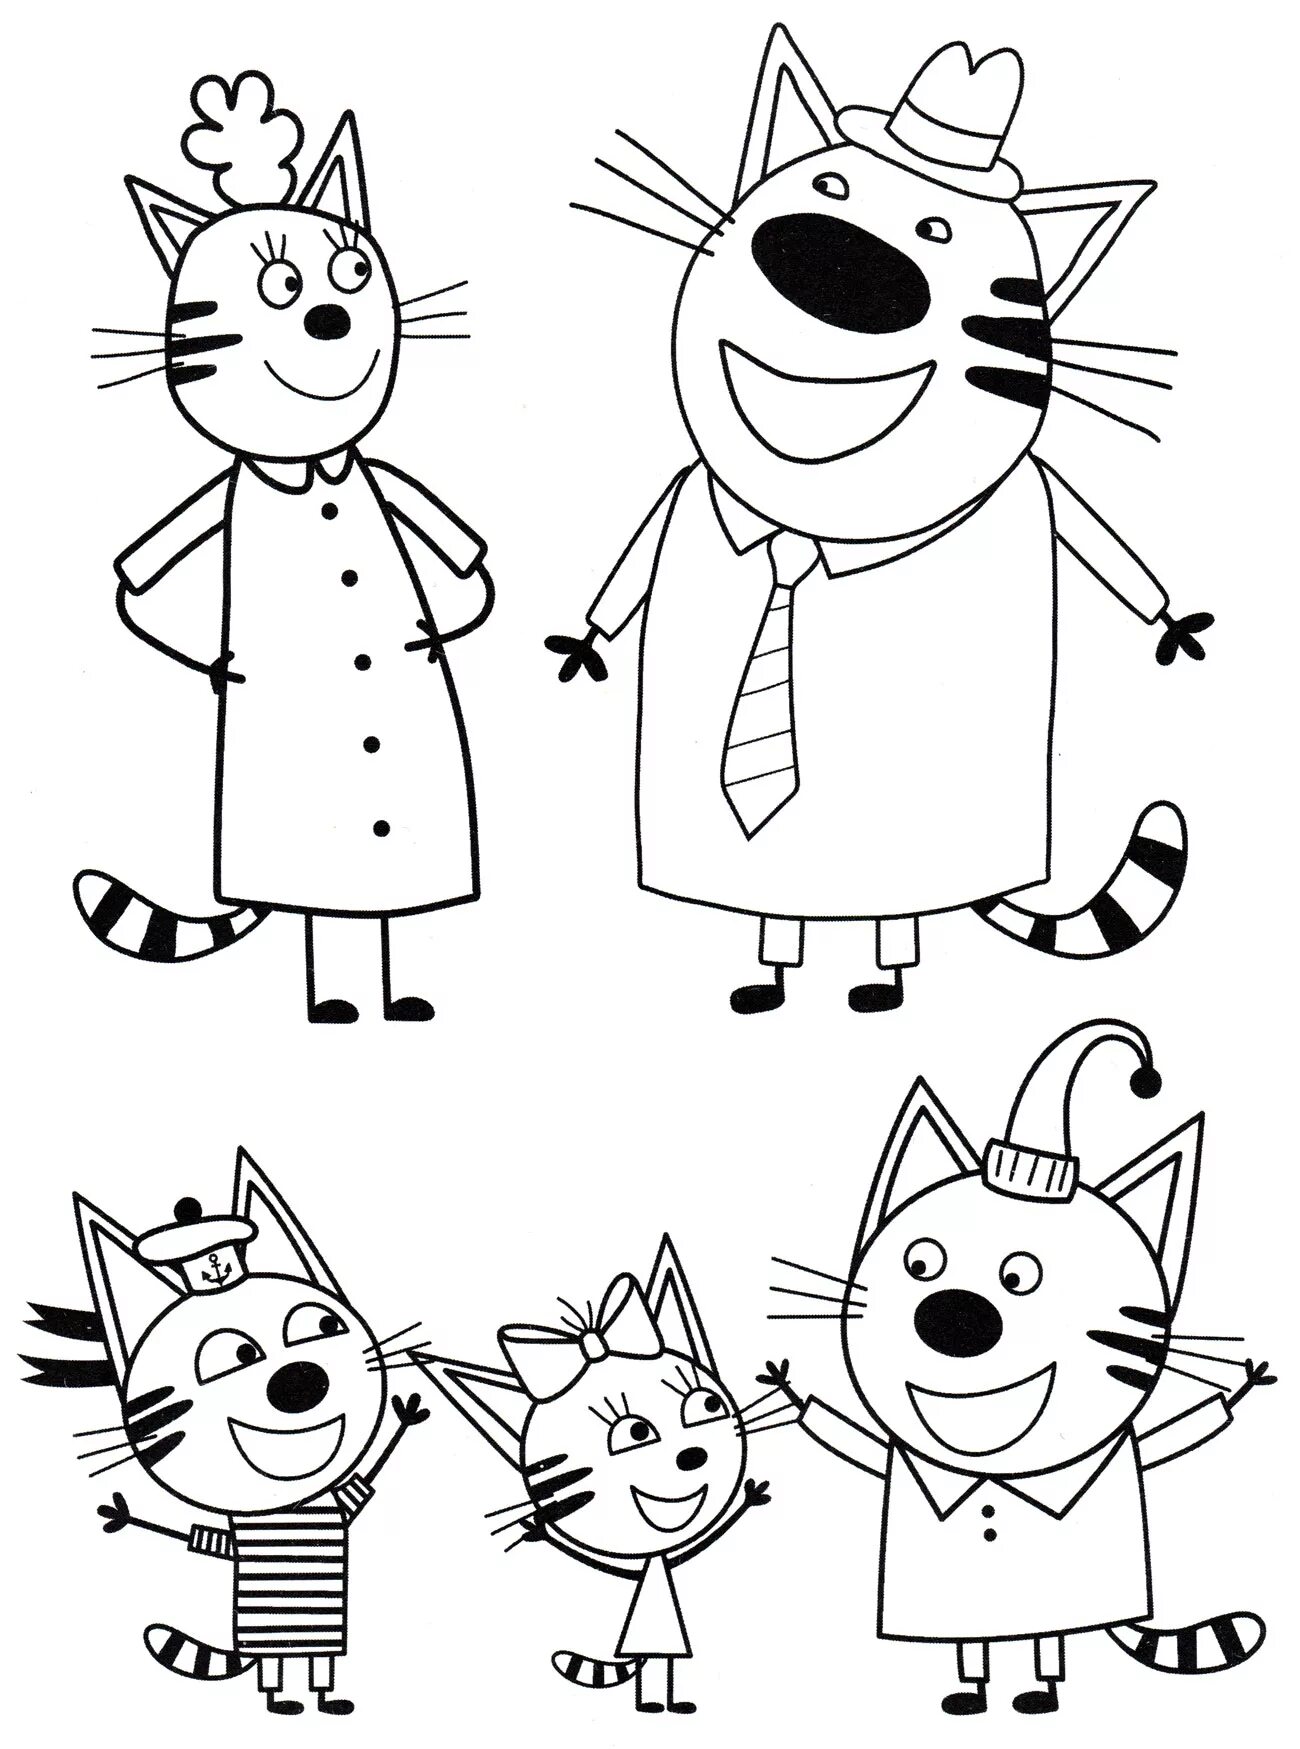 Three cats cartoon #4